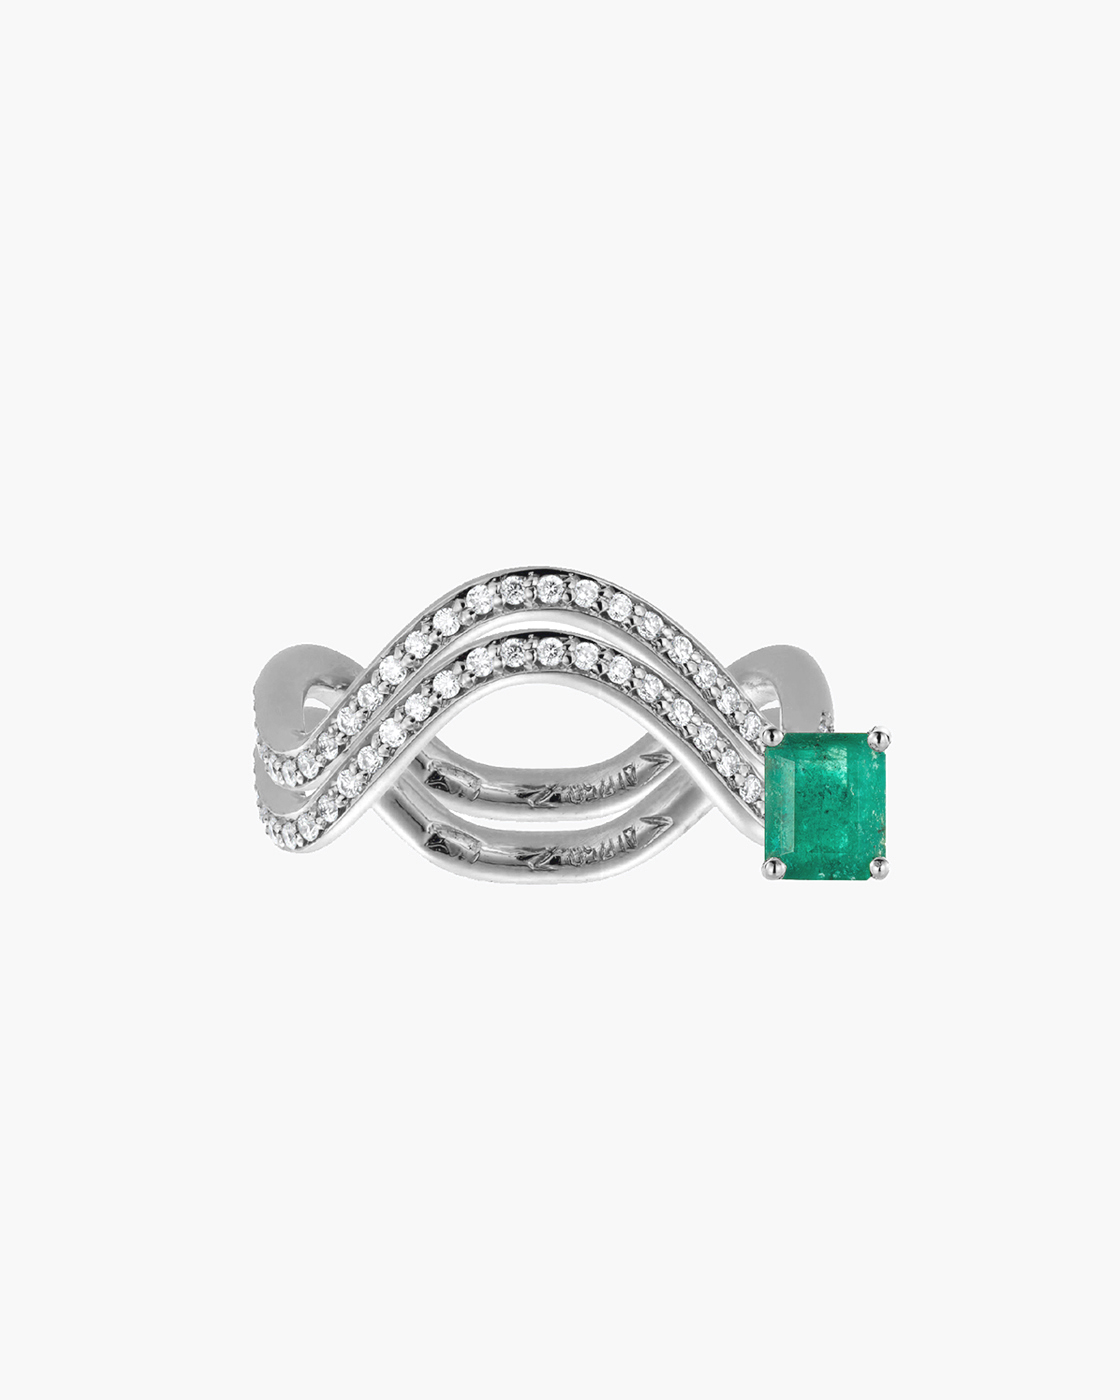 Double Petite Comete White Gold Emerald And Diamond Ring